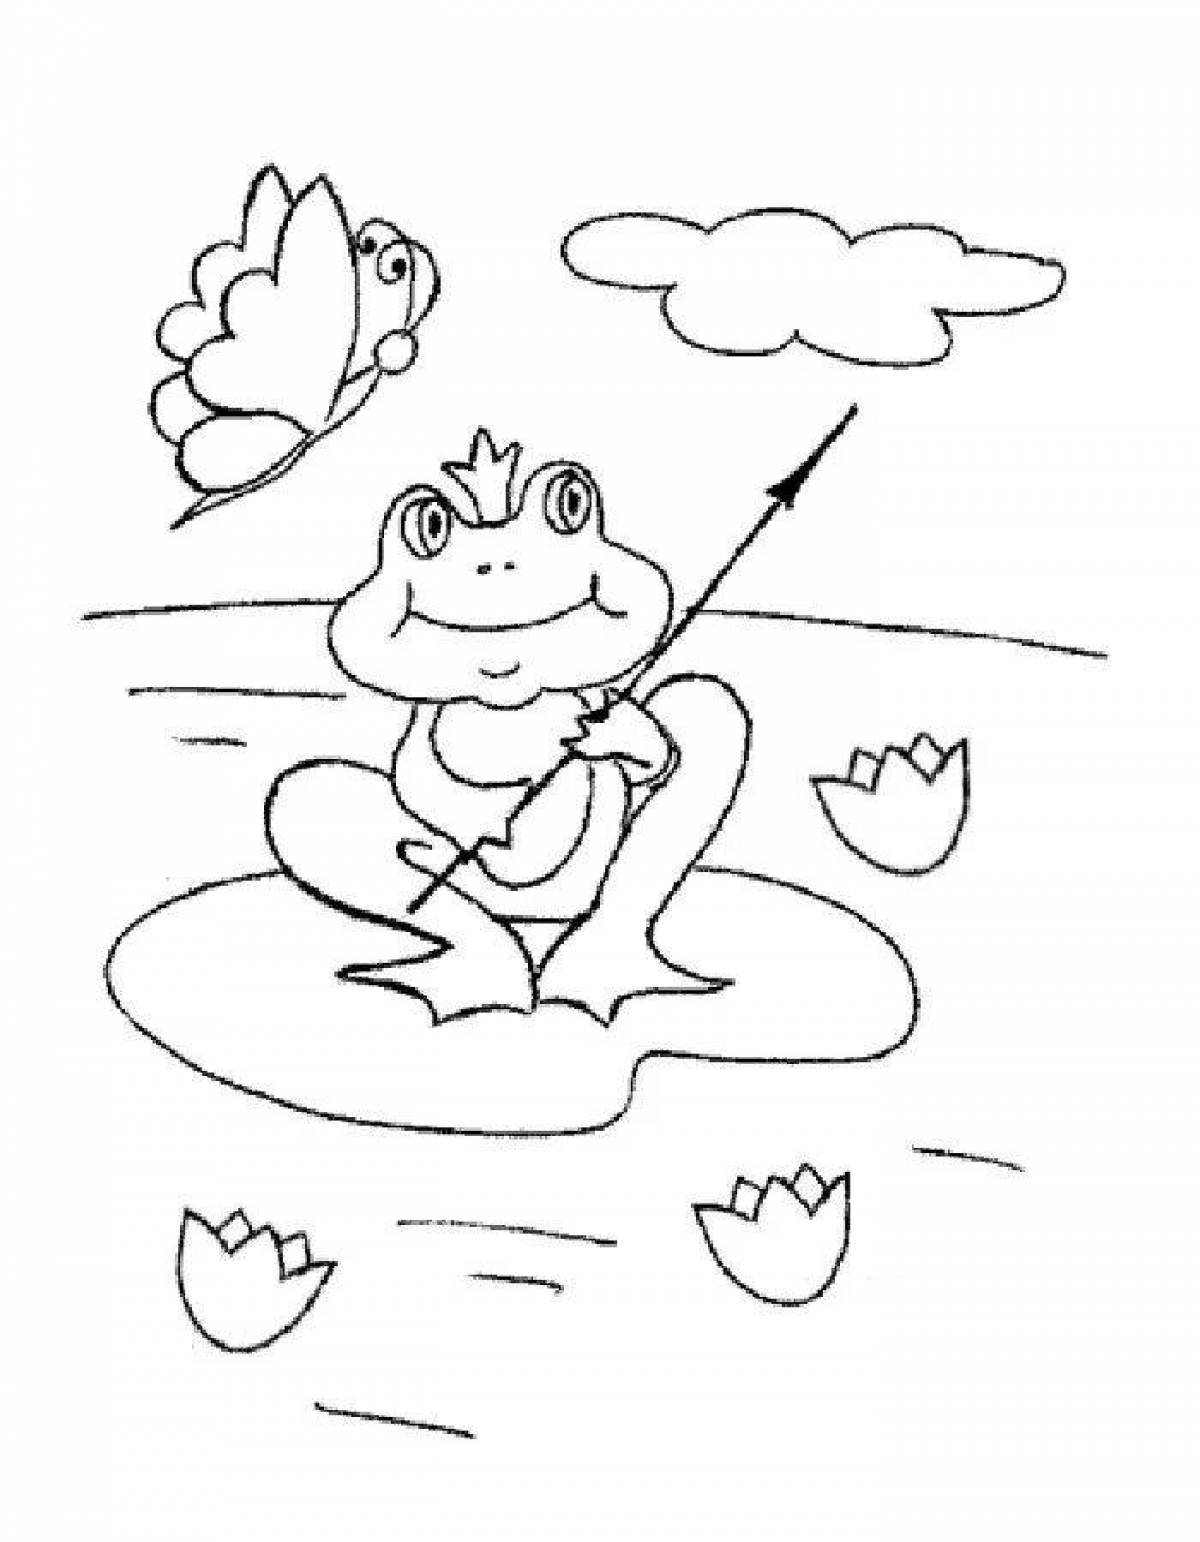 Rampant frog princess coloring book for kids